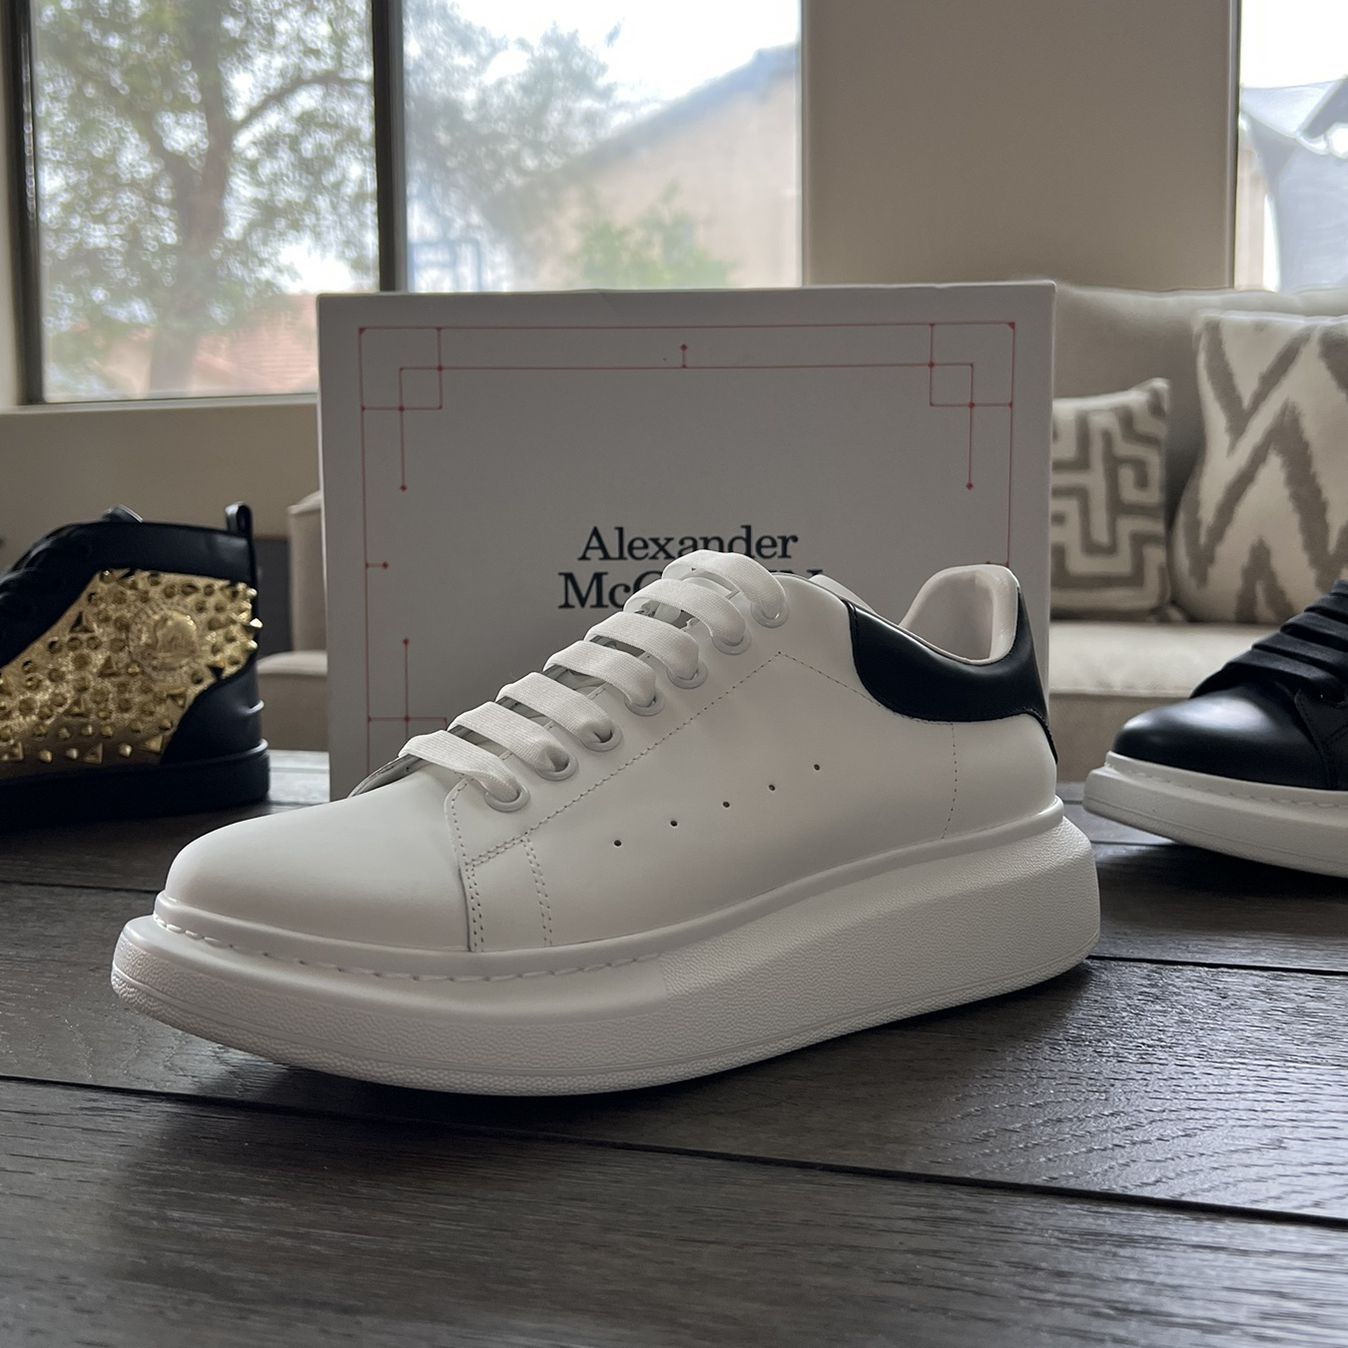 Shoe’s Premium/ Alexander McQueen for Sale in Las Vegas, NV - OfferUp